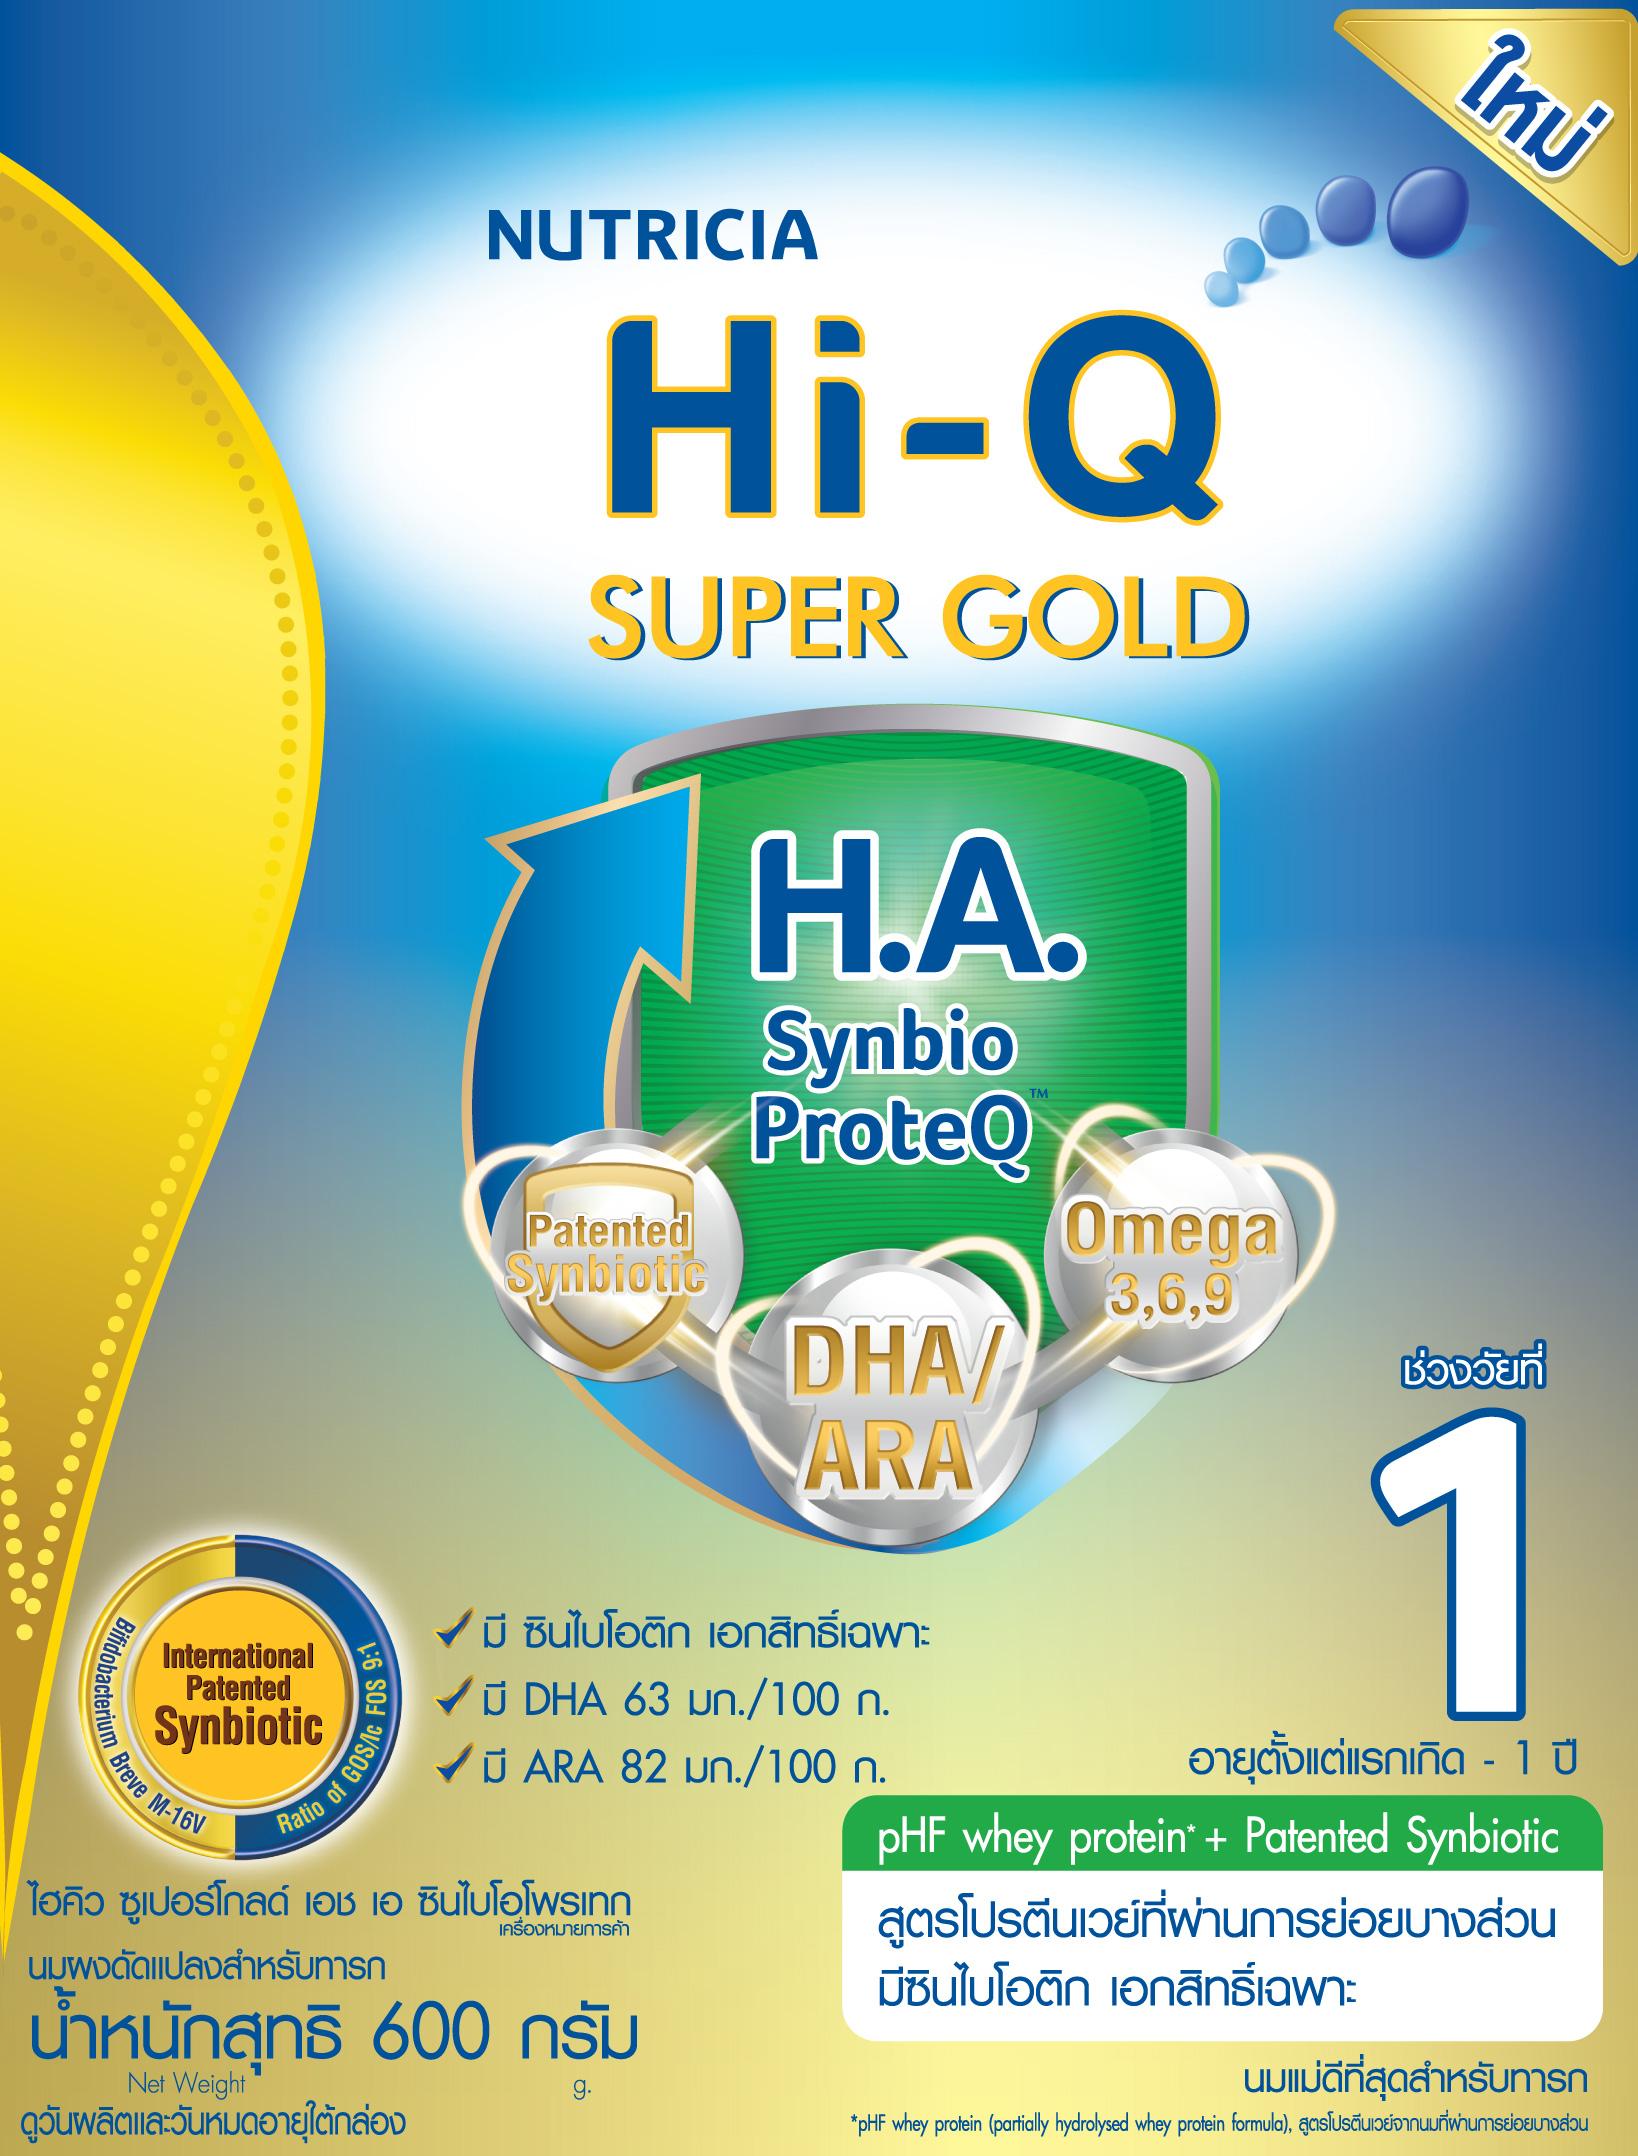 นมผง Hi-Q Supergold H.A. 1 ไฮคิว ซูเปอร์โกลด์ เอช เอ ซินไบโอโพรเทก 600 กรัม (ช่วงวัยที่ 1)